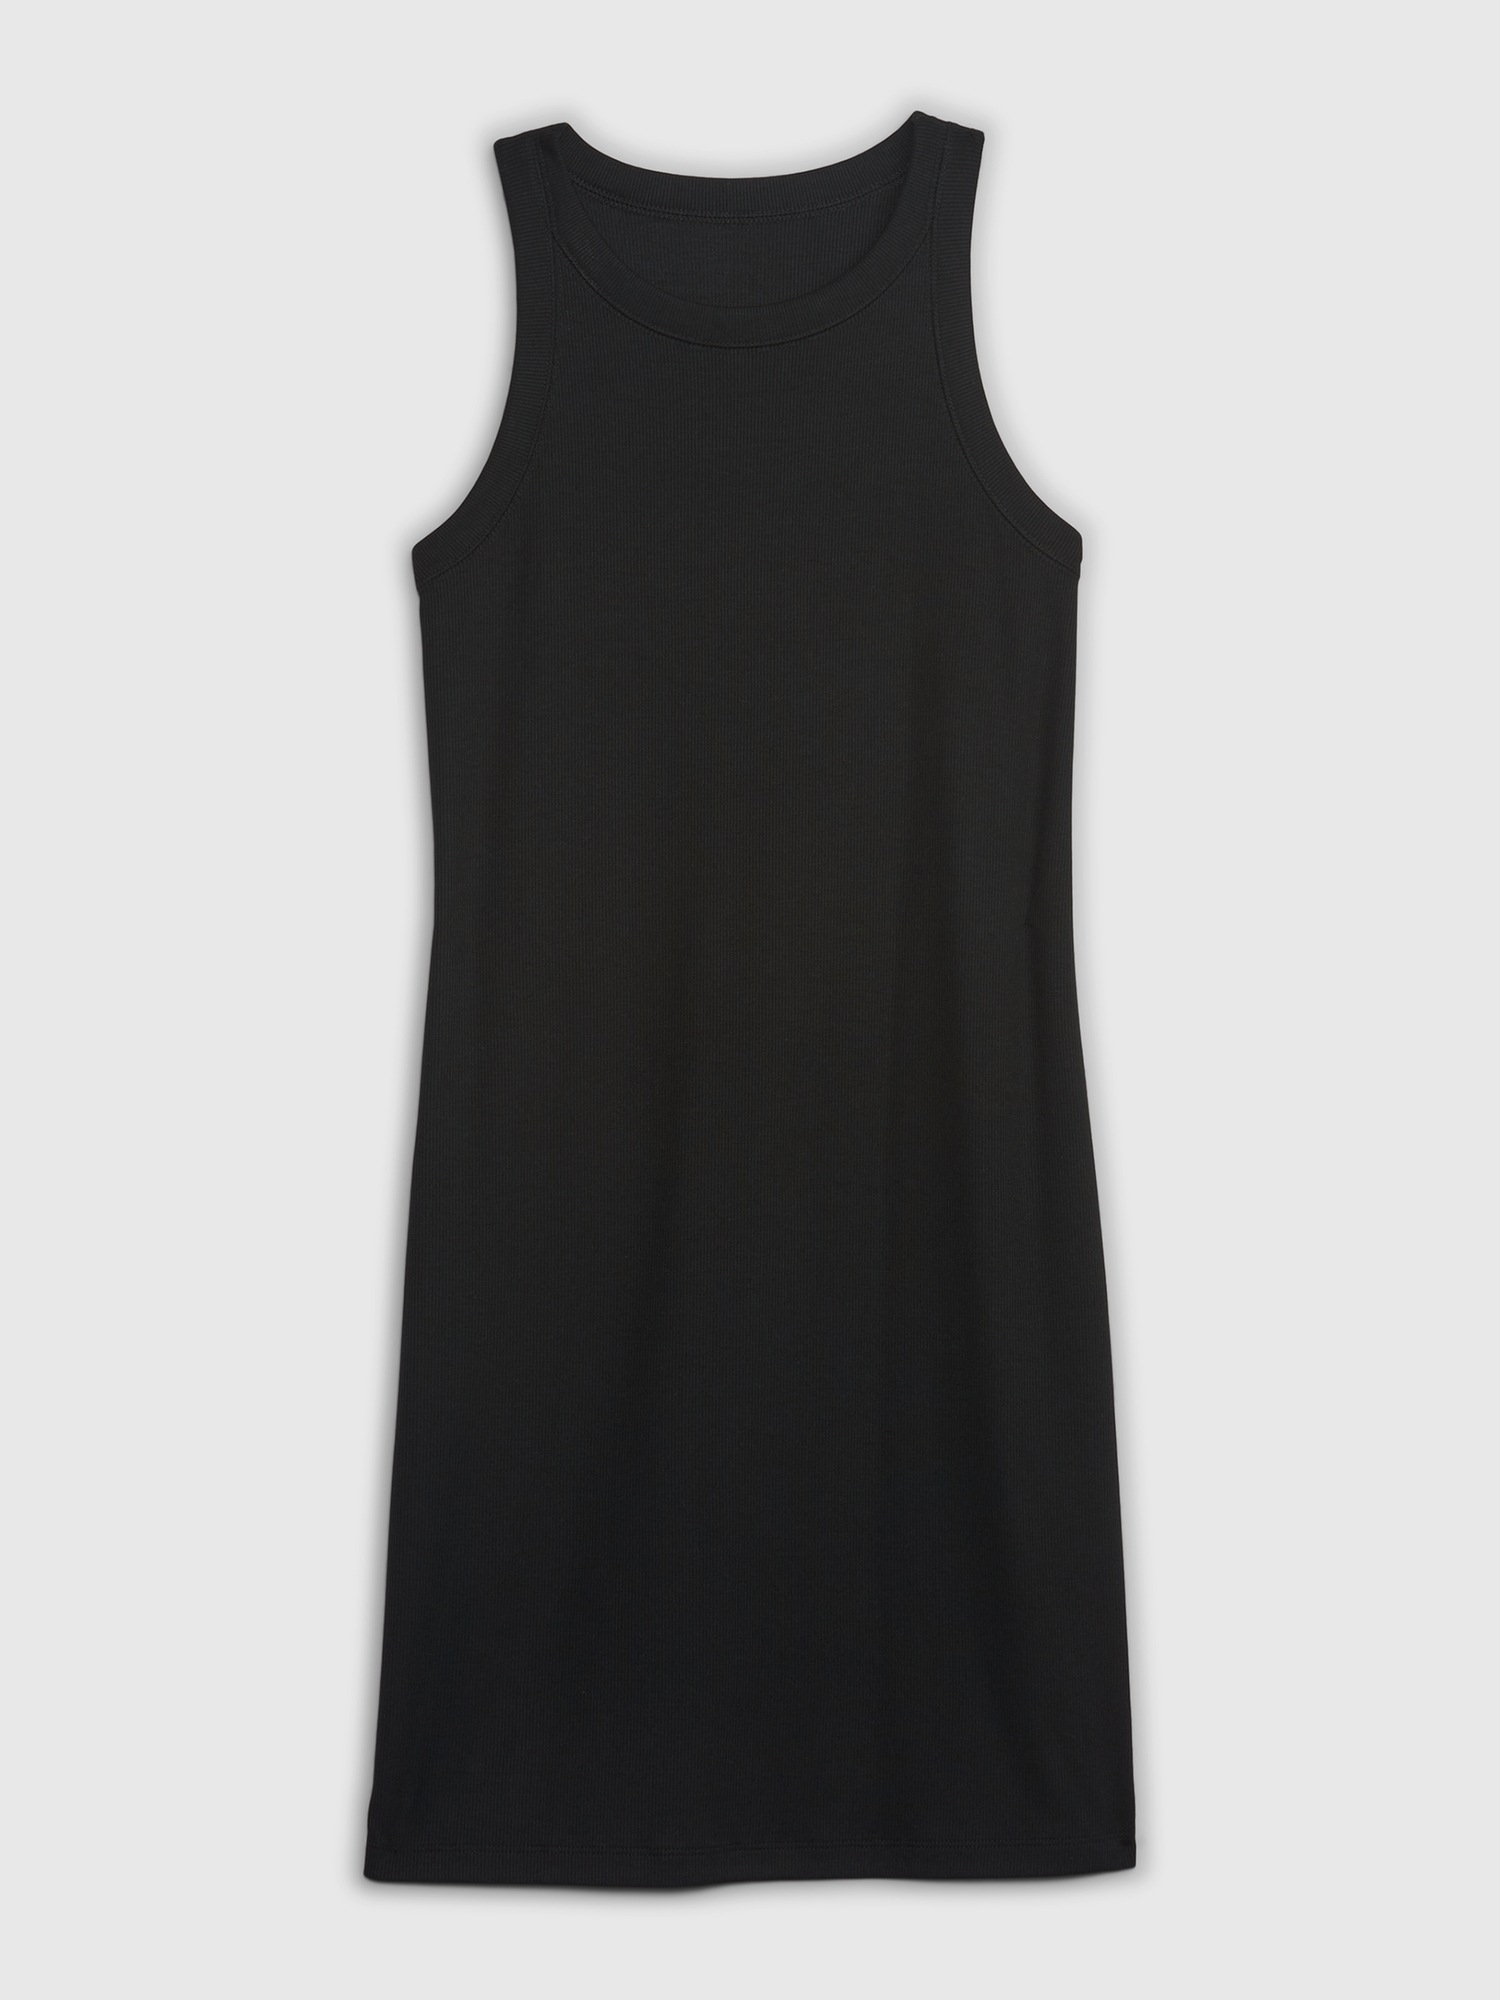 GAP, Dresses, Gap Summer Black Halter Top Shelf Bra Short Dress Medium 7